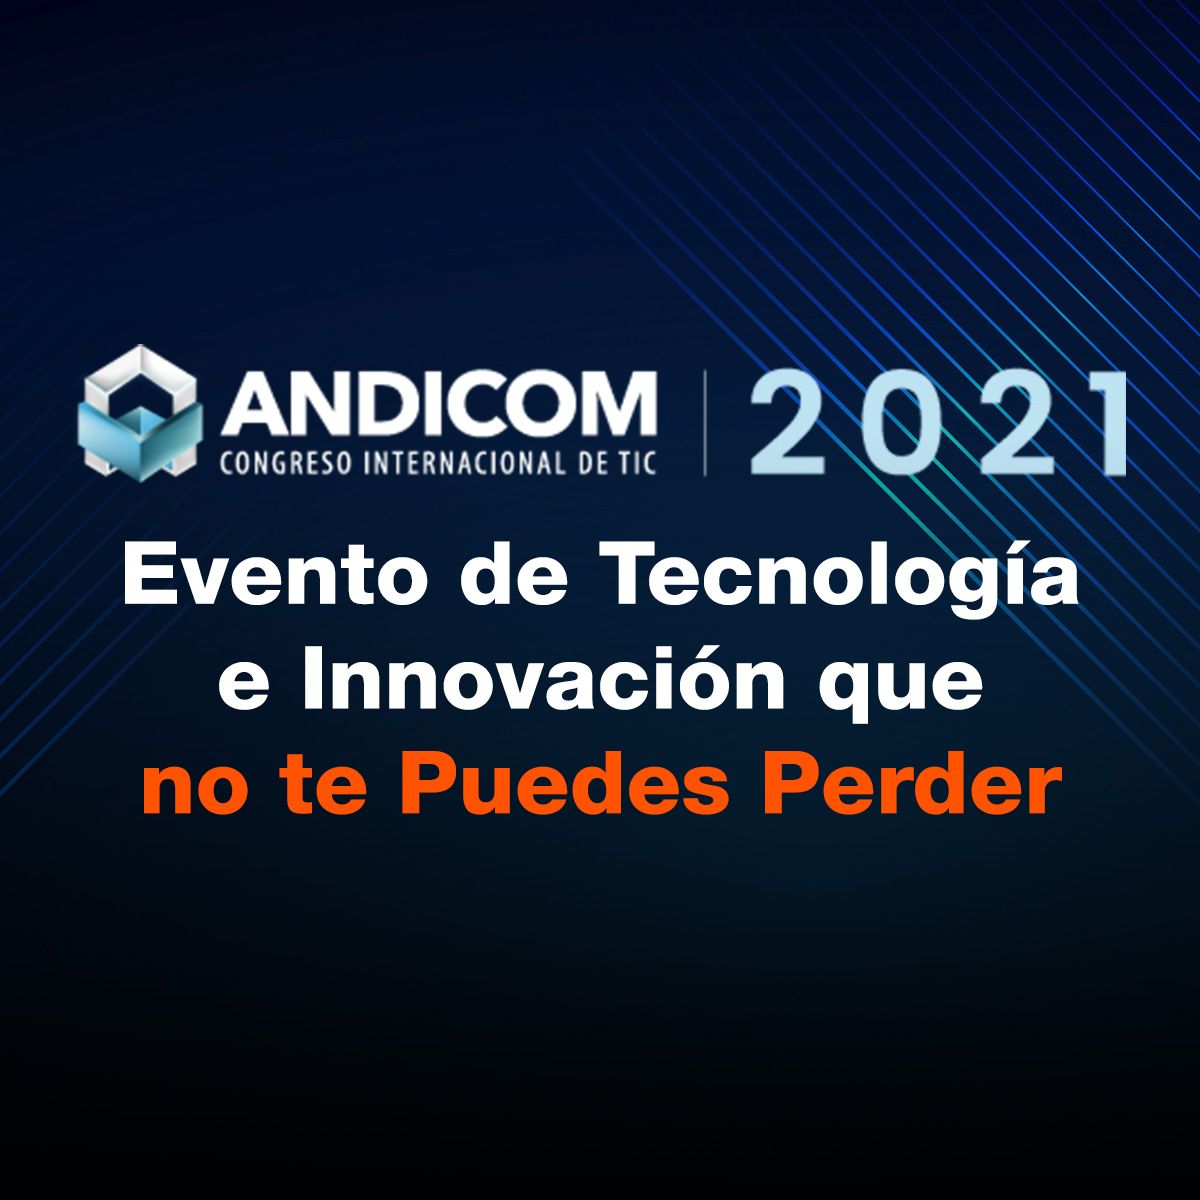 ANDICOM 2021